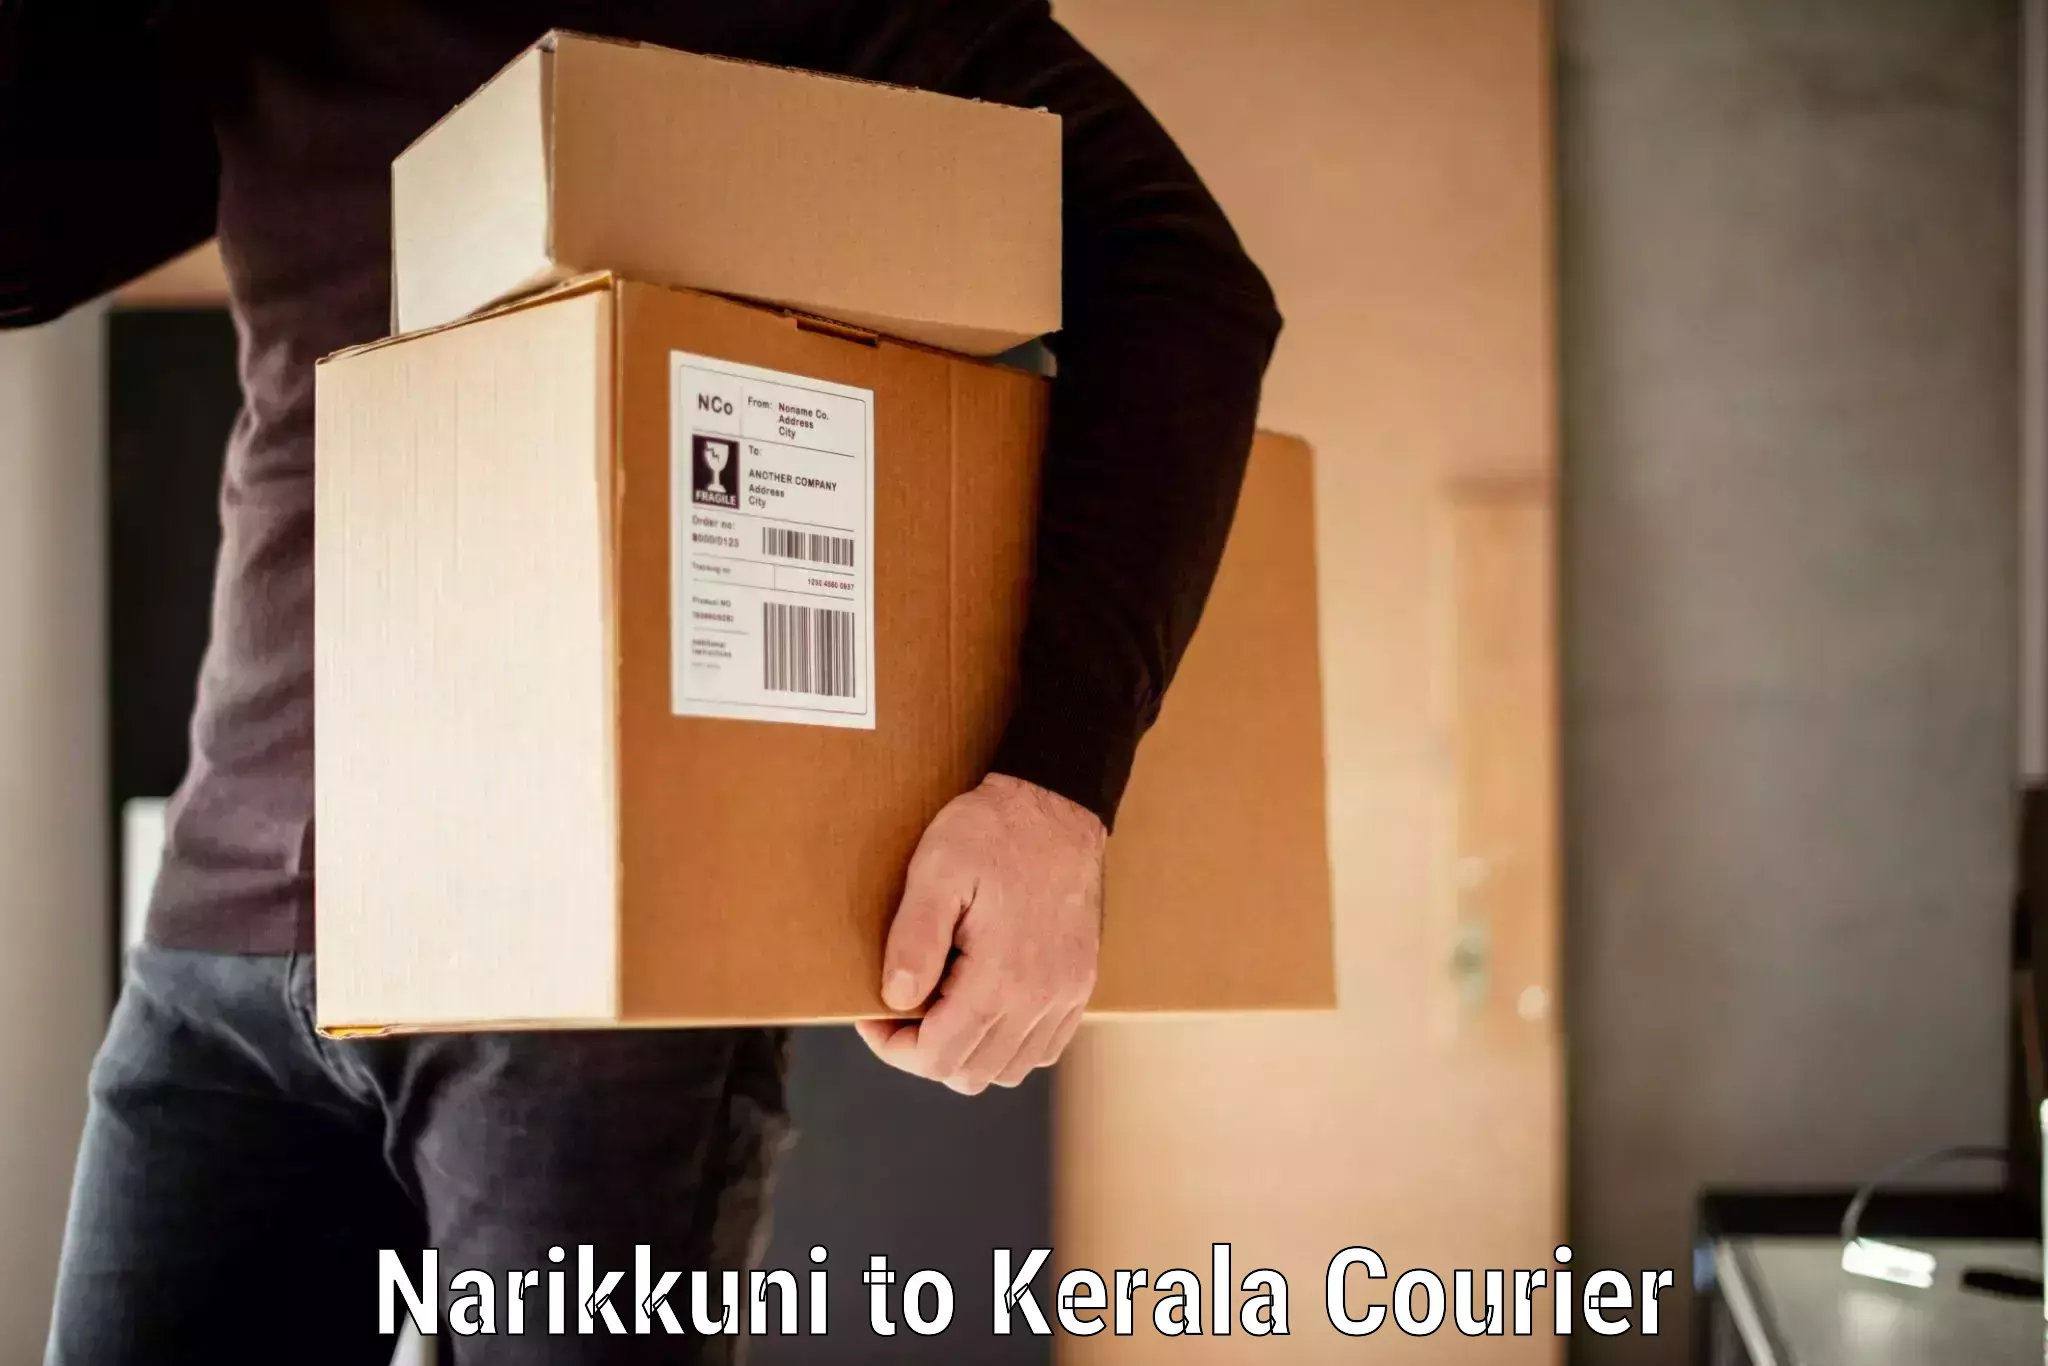 Baggage transport updates Narikkuni to Kerala